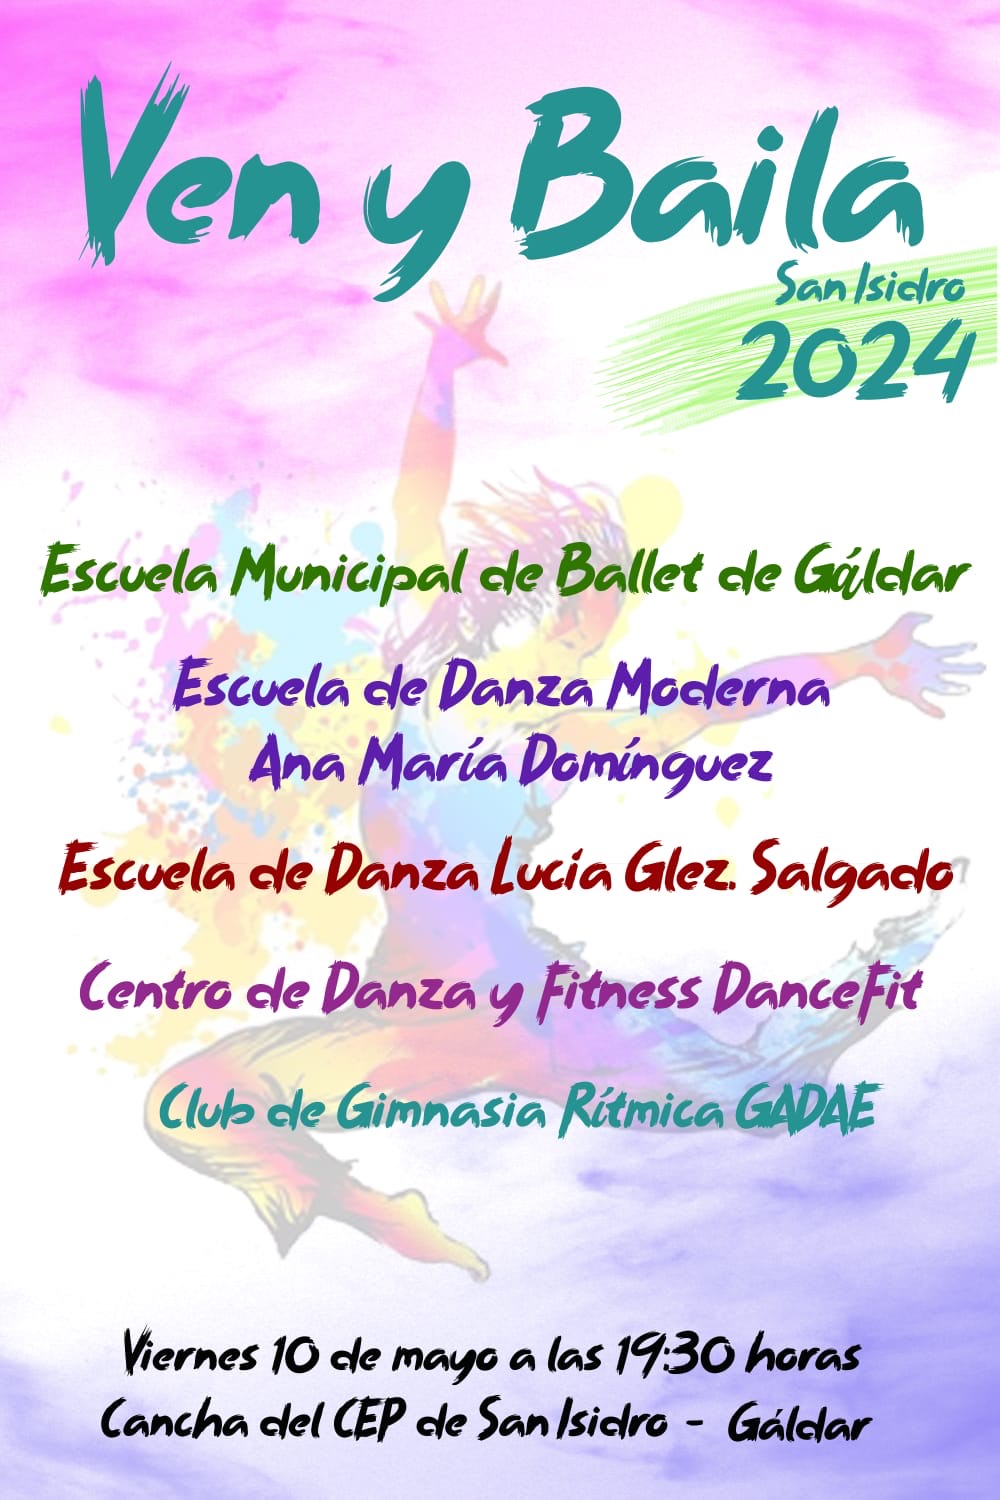 Vuelve una nueva edición de “Ven y baila” a San Isidro de Gáldar